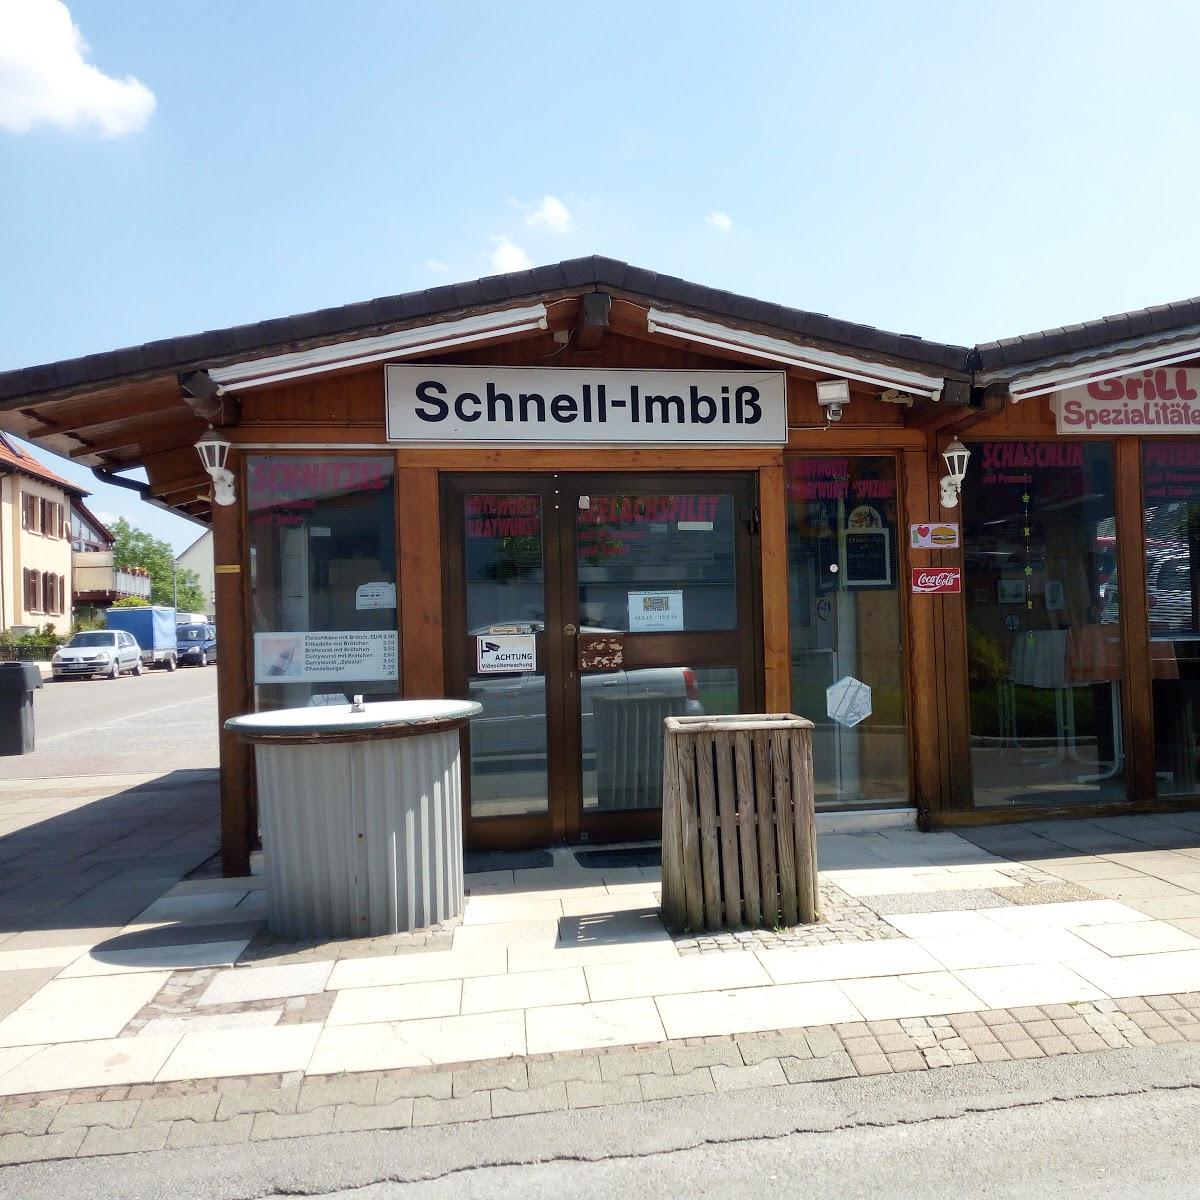 Restaurant "Seifried Imbiss" in Hechingen